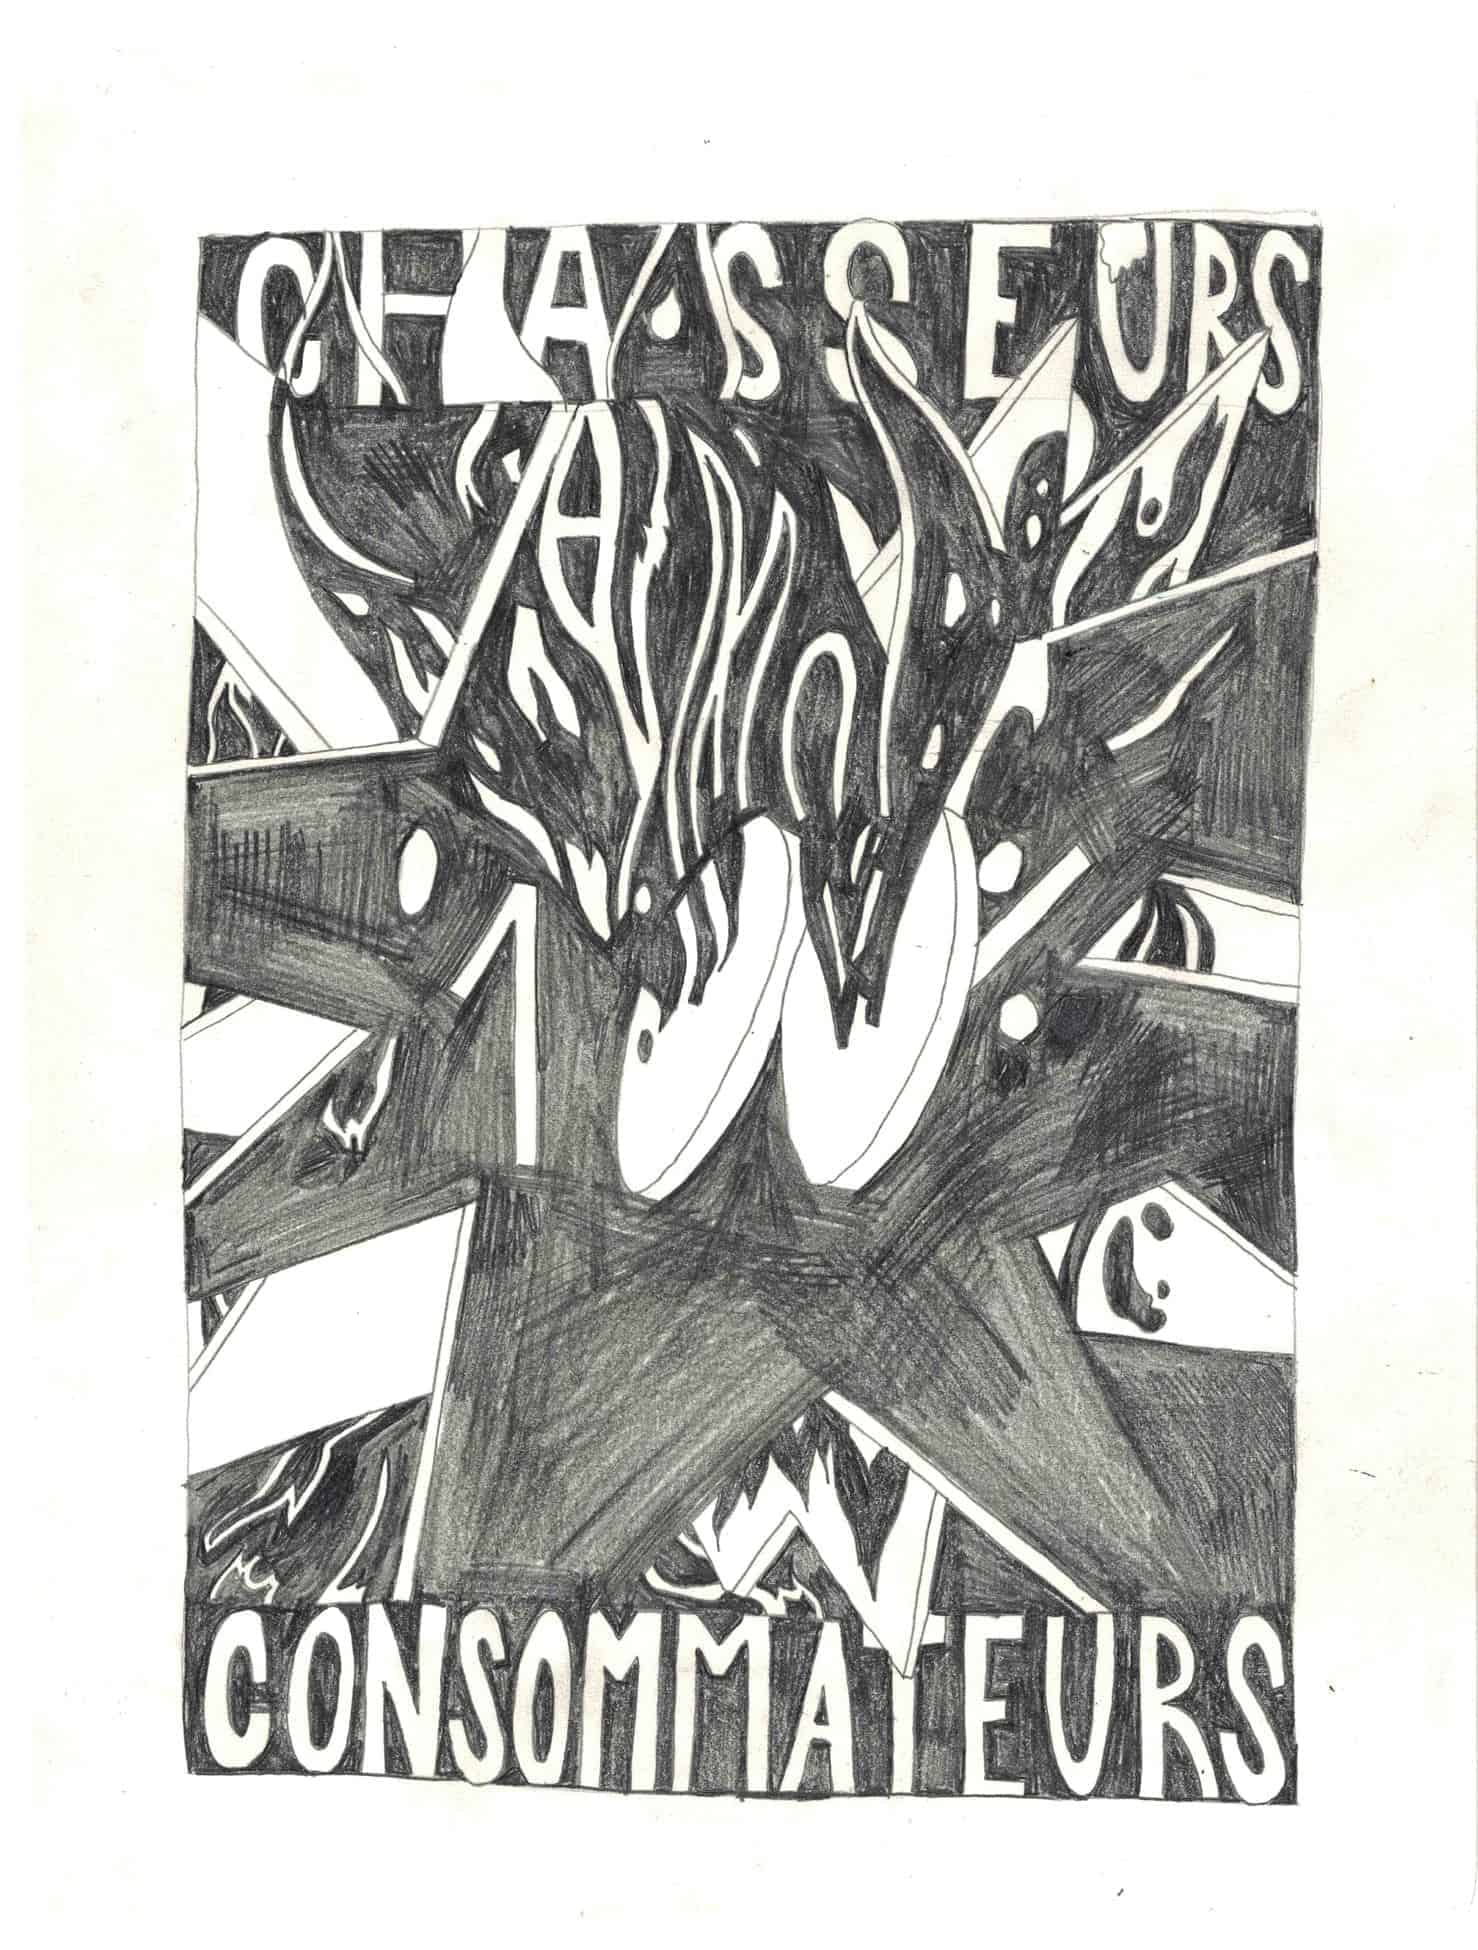 Thibault Scemama de Gialluly, Chasseurs consommateurs, 19x25, crayon sur papier, 2020